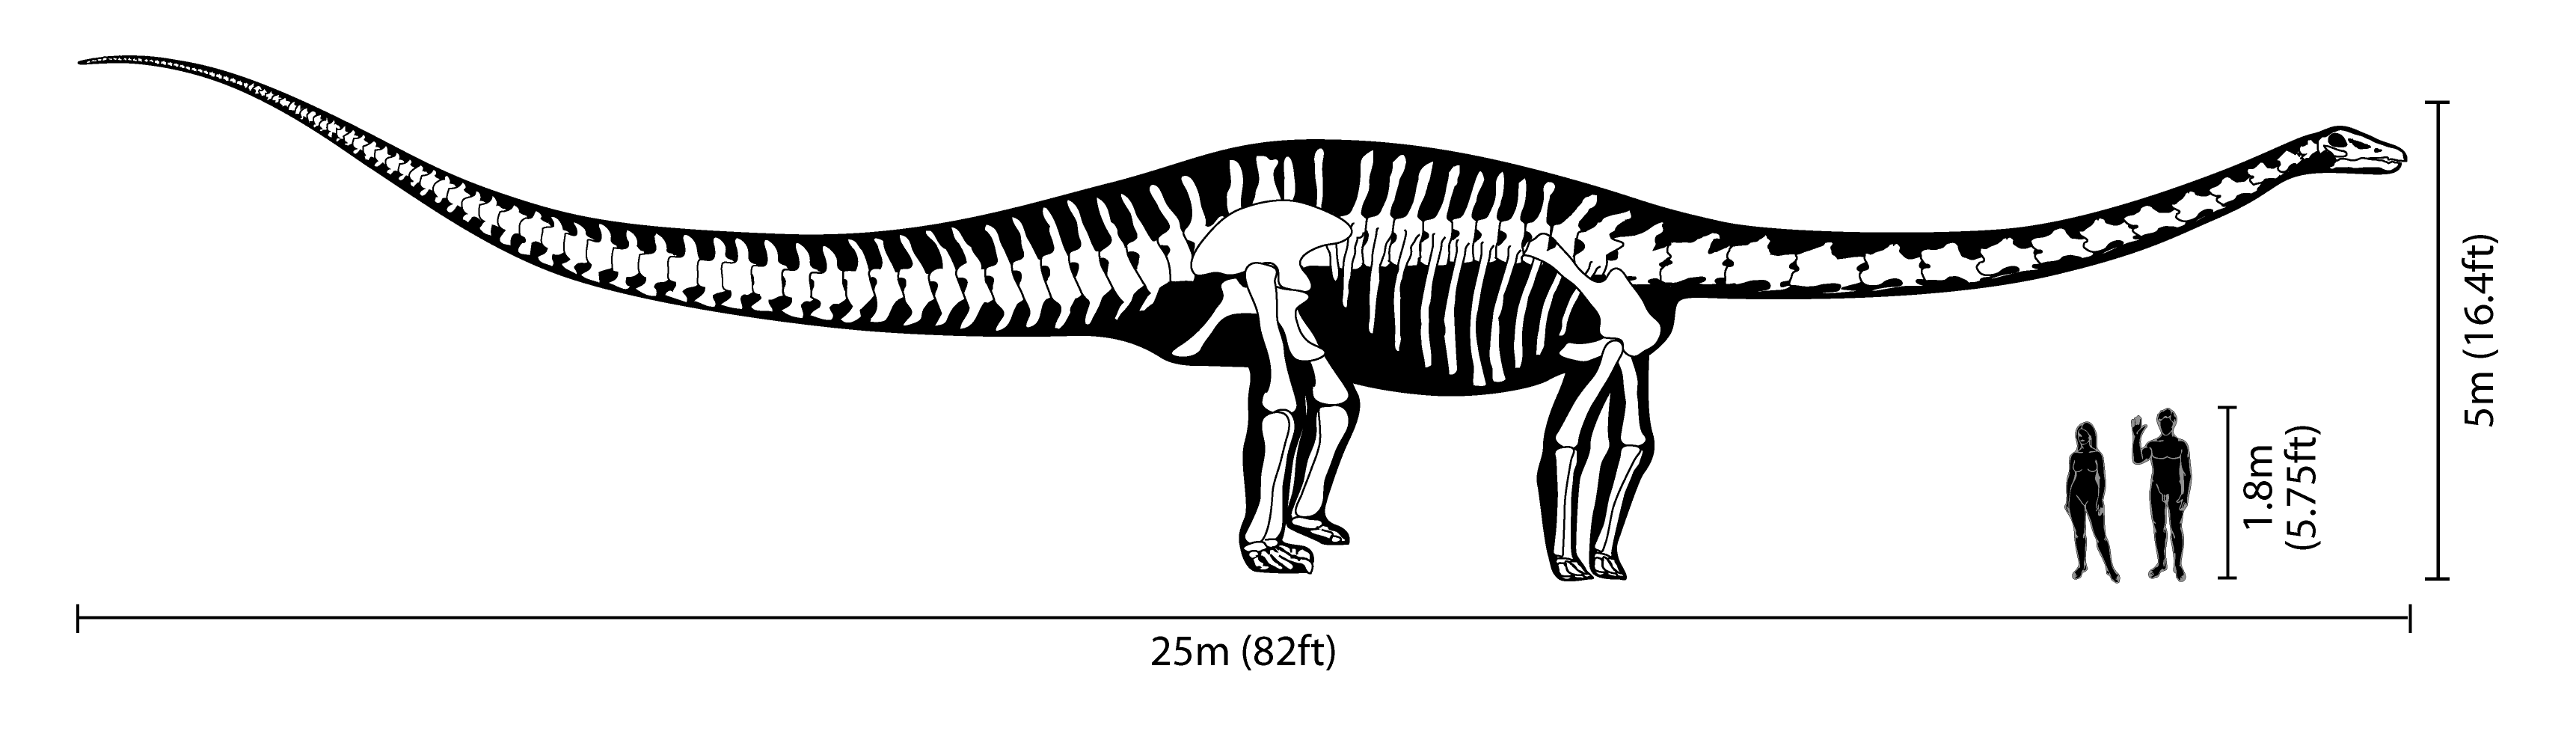 Diplodocus size comparison2